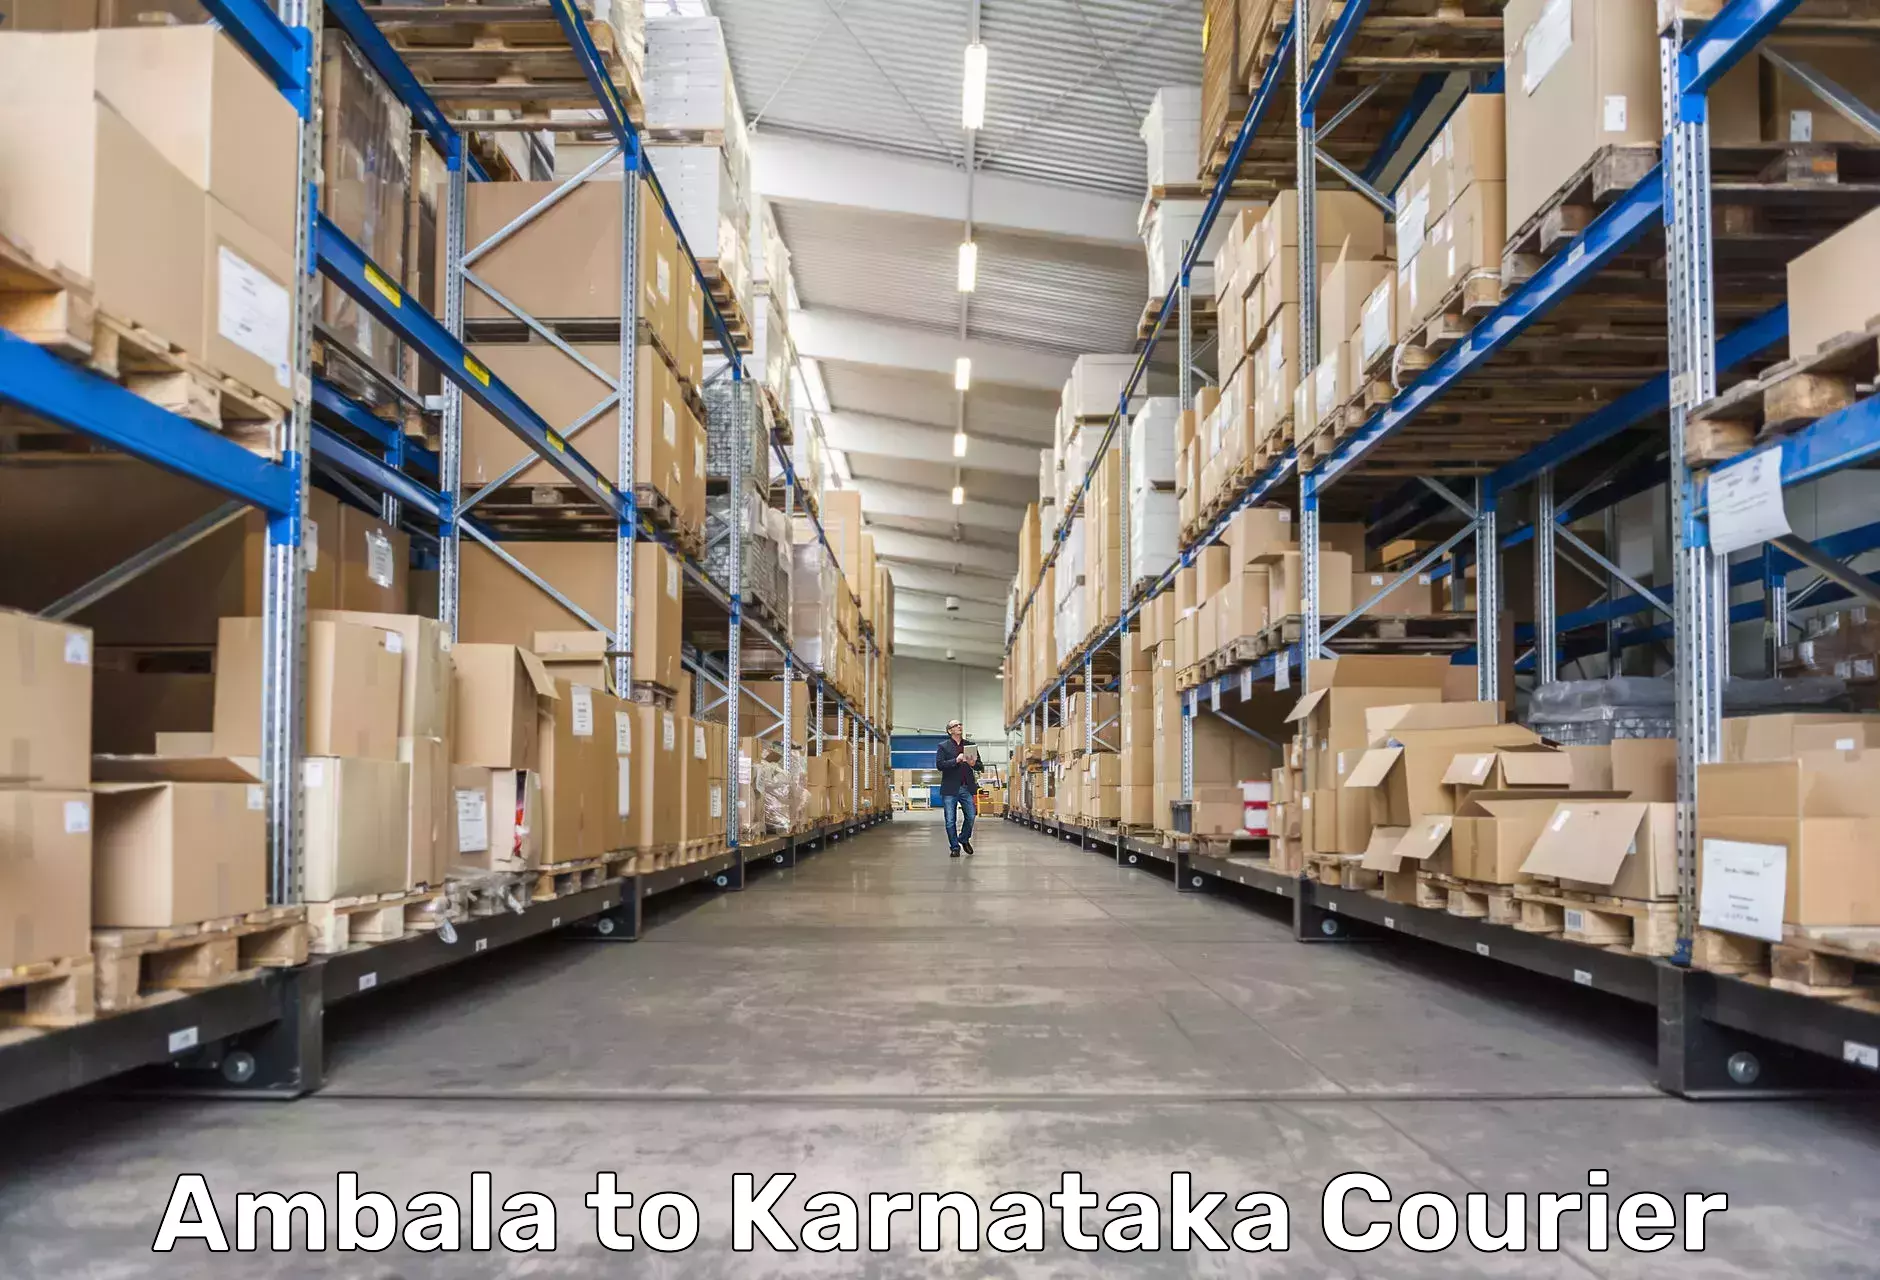 Overnight delivery services Ambala to Yenepoya Mangalore